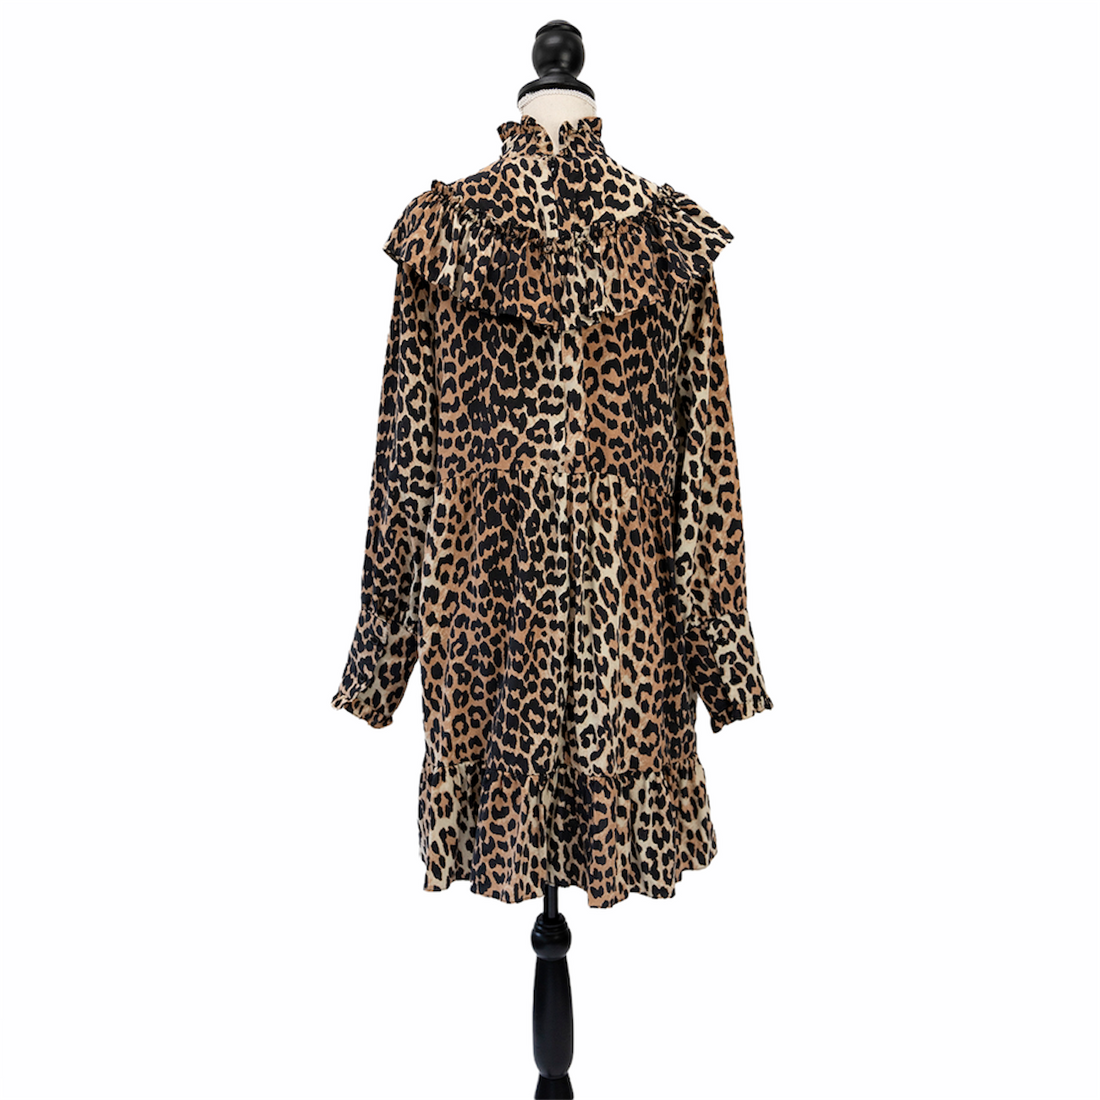 Ganni leopard print dress with ruffles